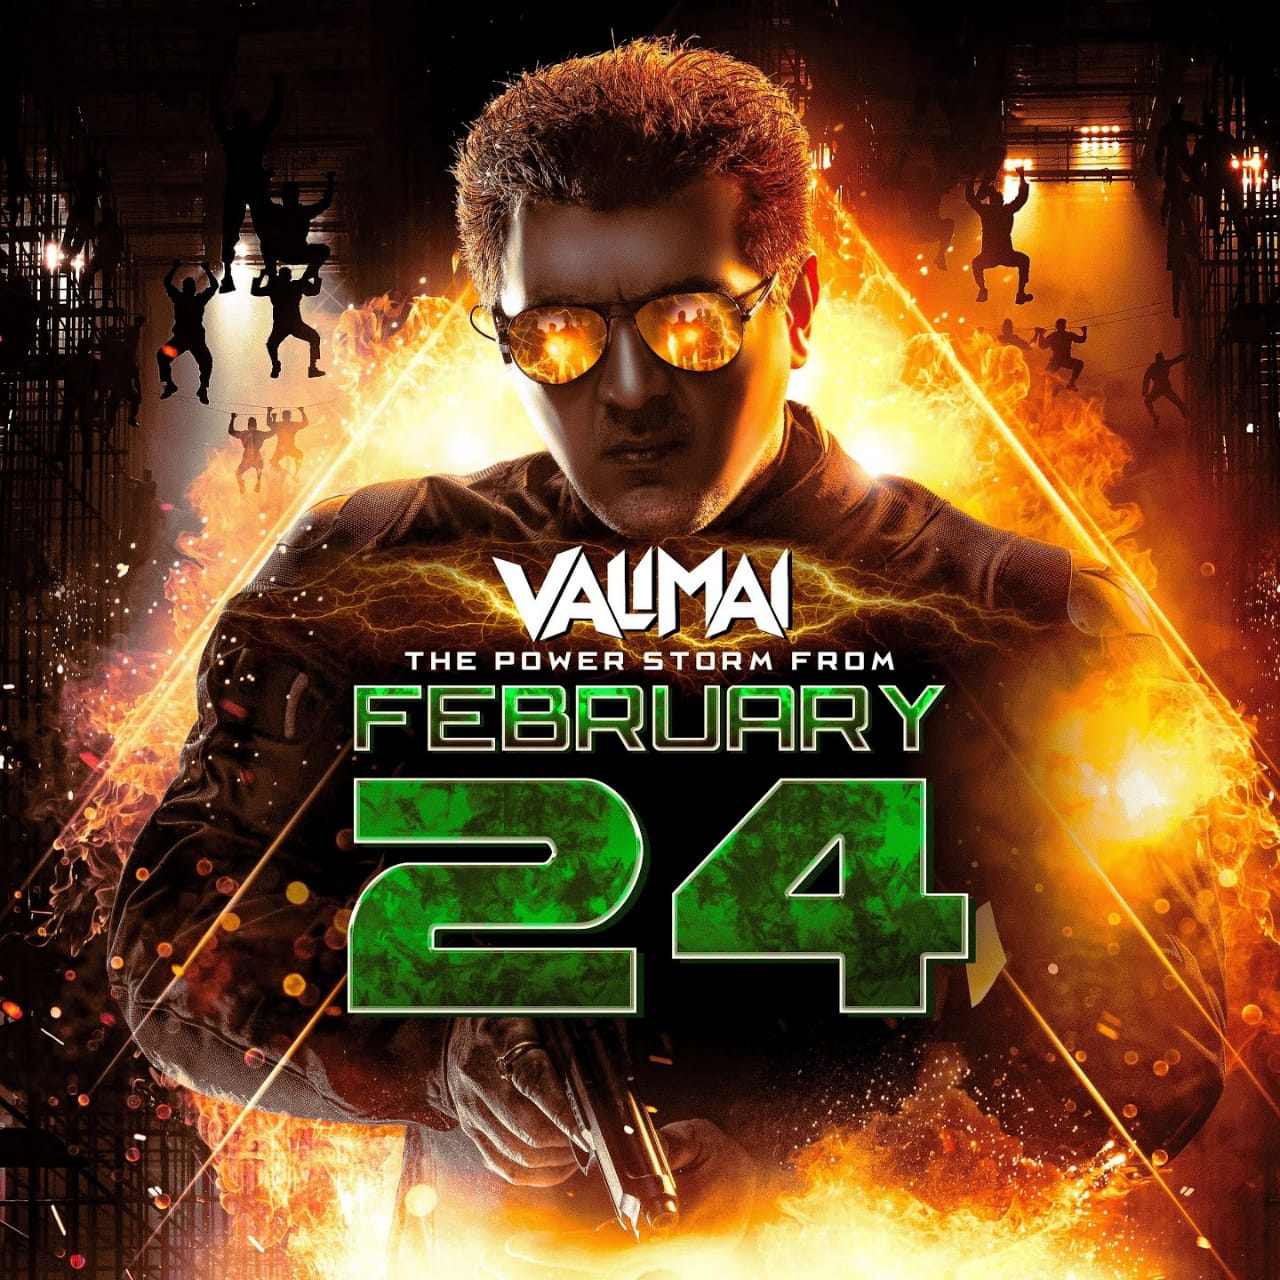 Valimai Movie 50 th day at madurai Gopuram Cinemas